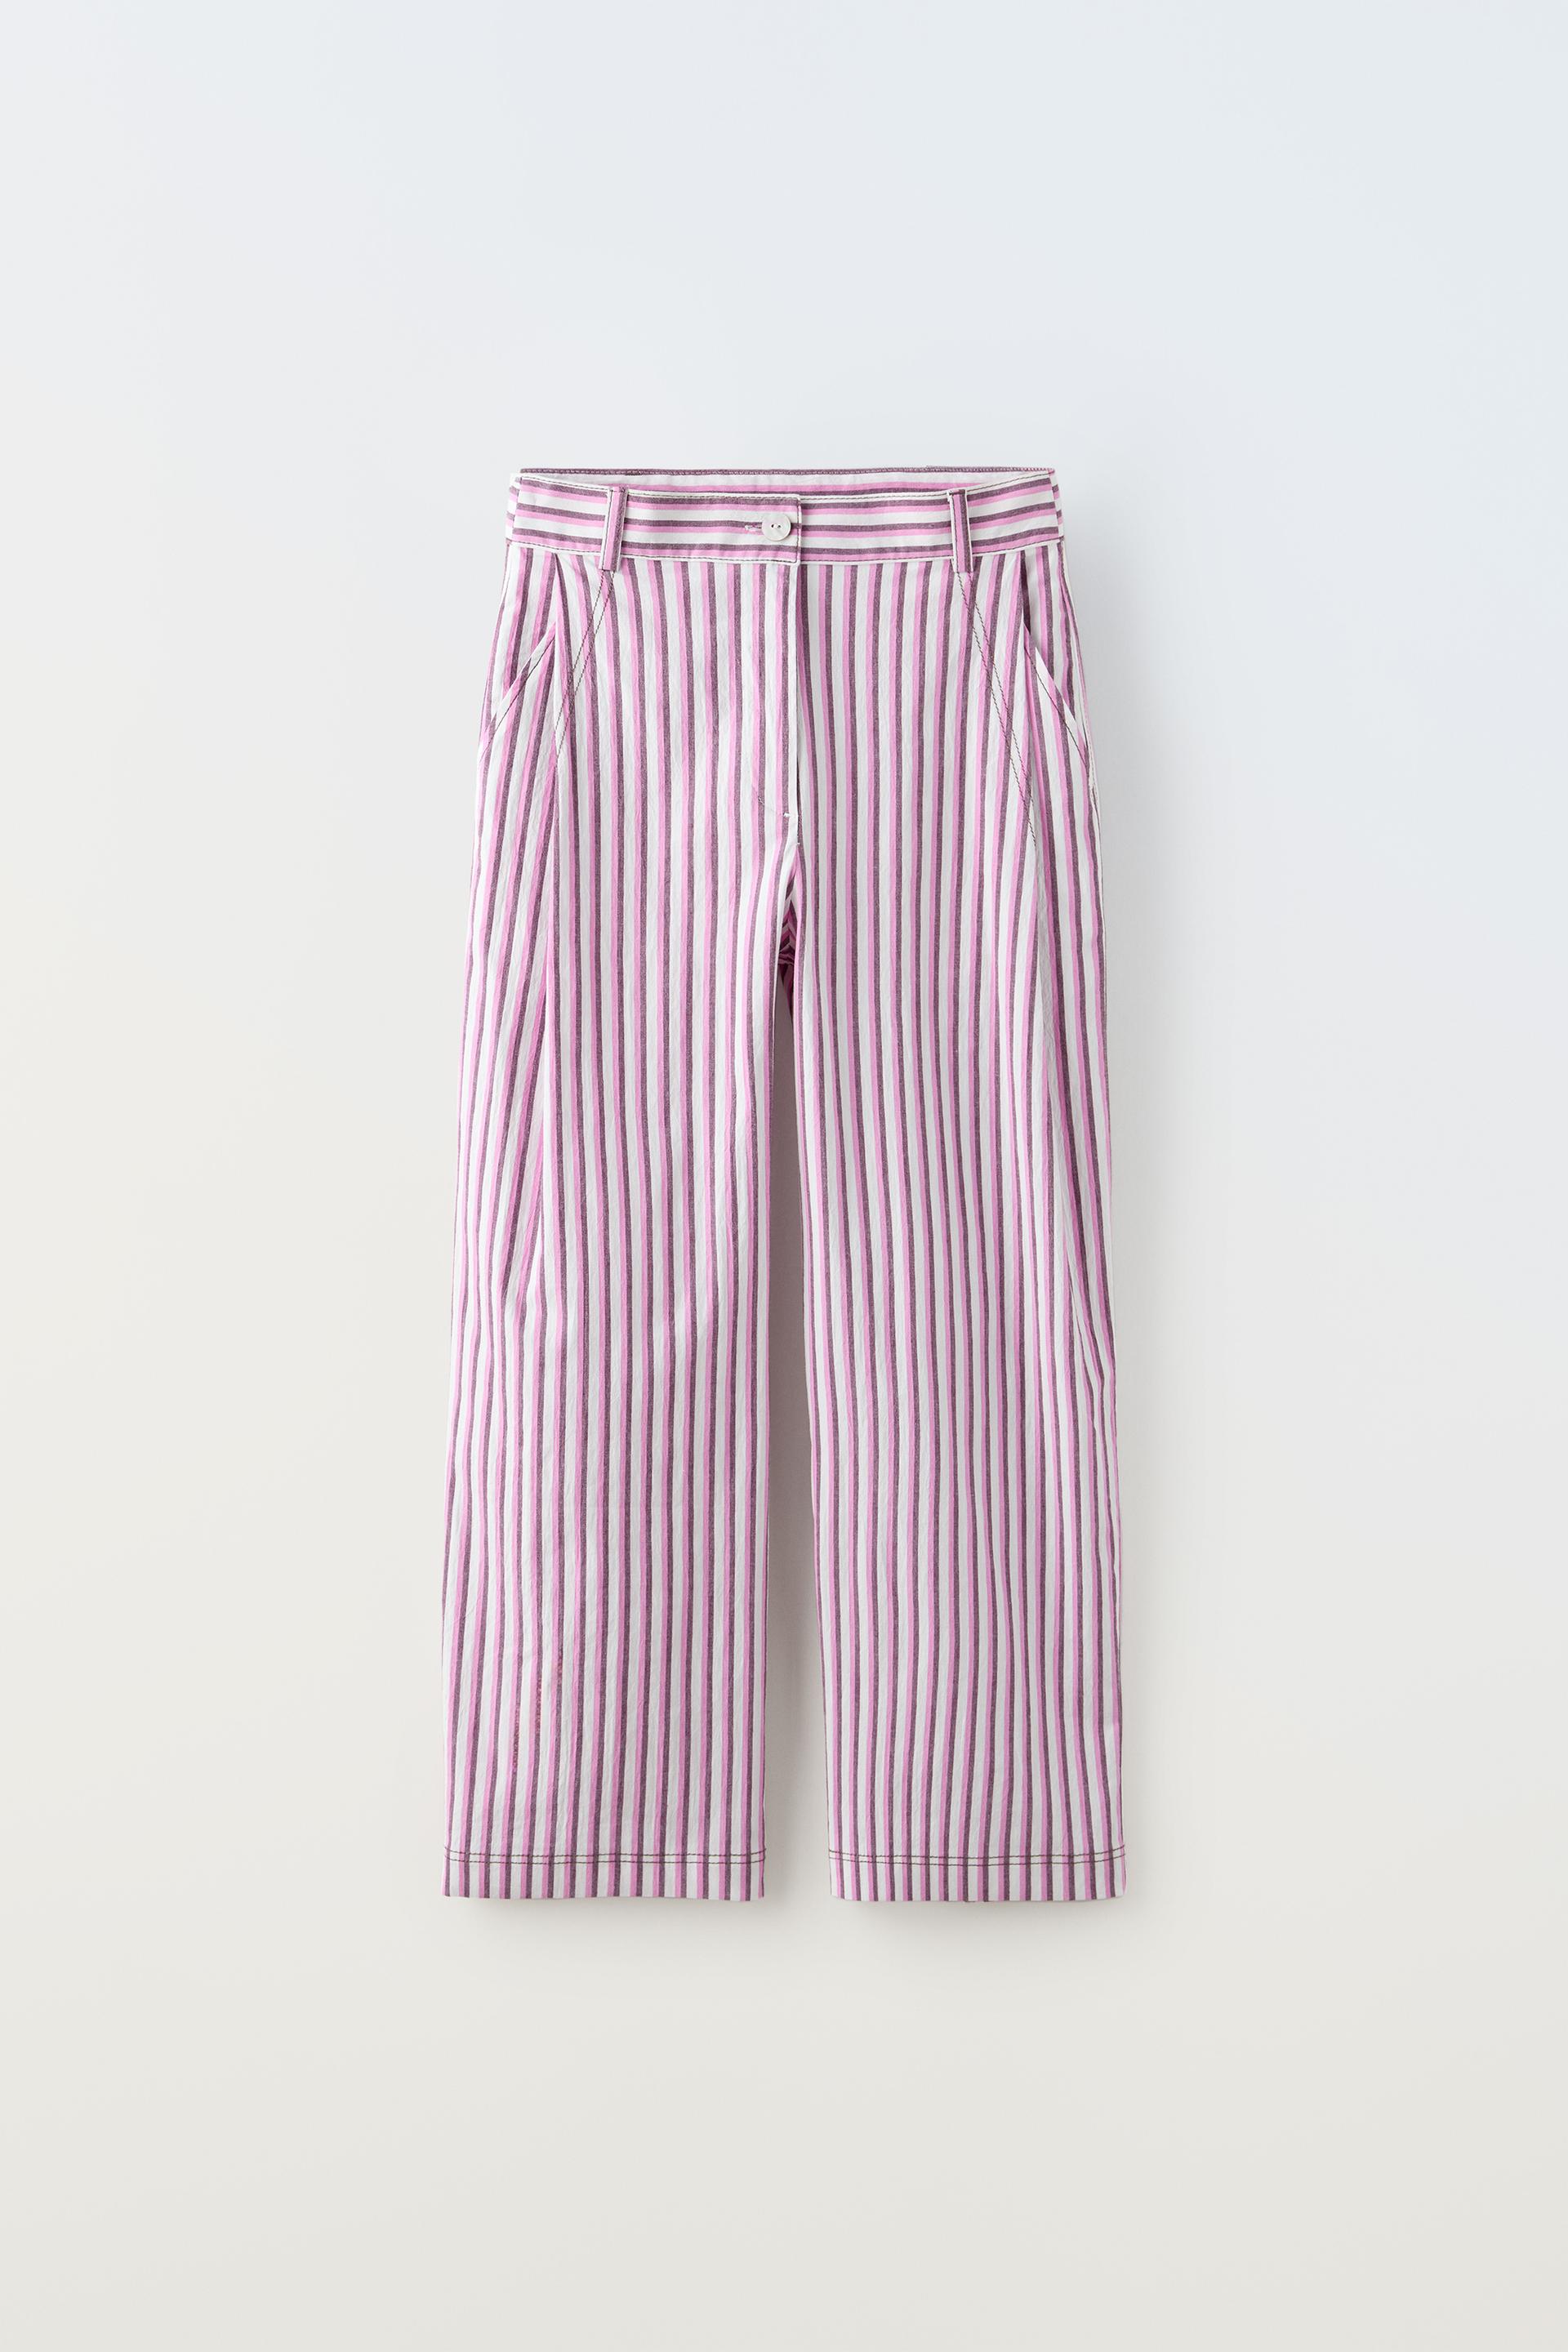 Брюки Zara Striped, розовый рубашка zara striped shirt розовый белый